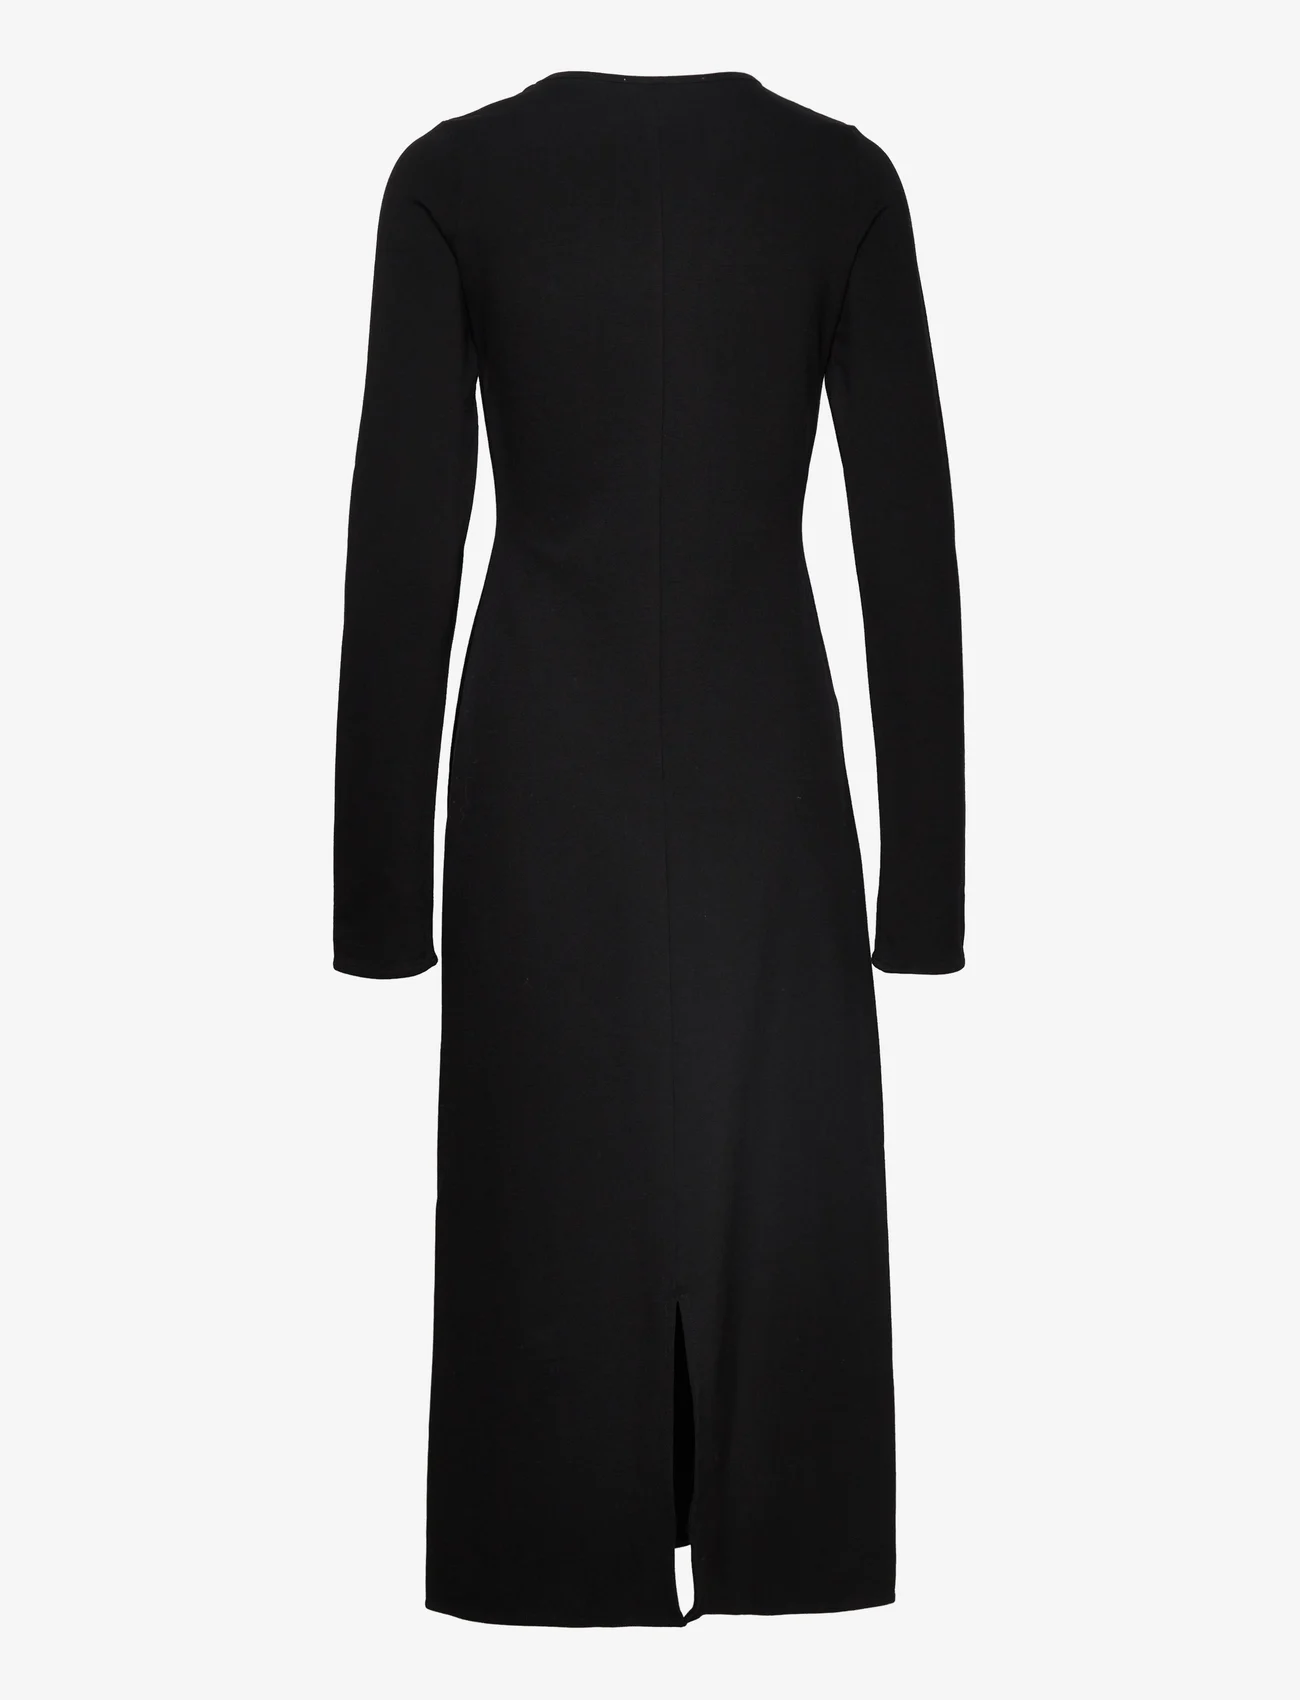 A Part Of The Art - FREE LONG SLEEVE DRESS - marškinėlių tipo suknelės - black - 1